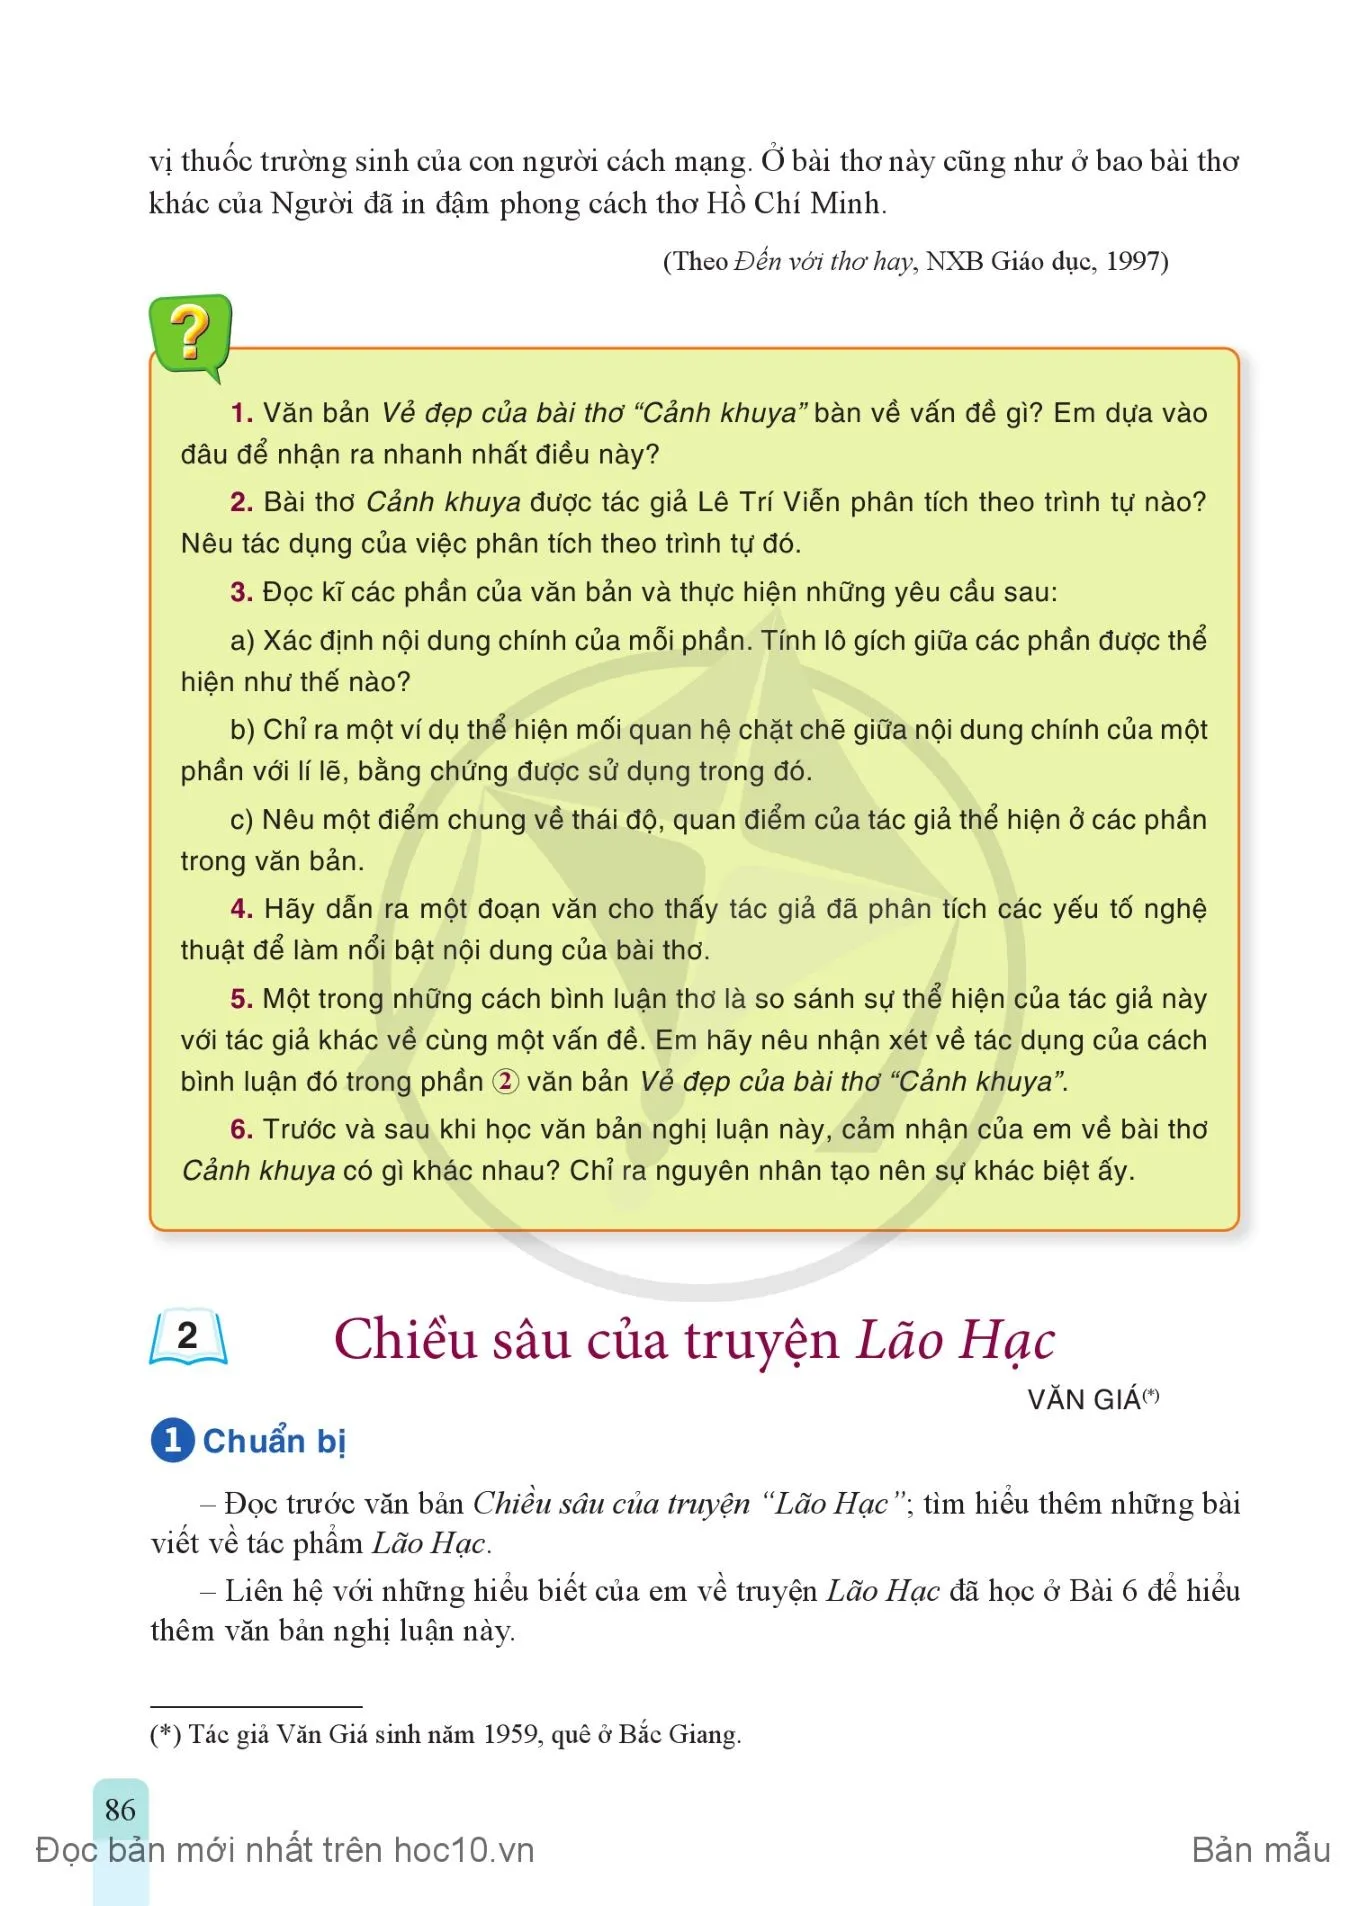 • Thực hành tiếng Việt: Thành phần biệt lập trong câu 